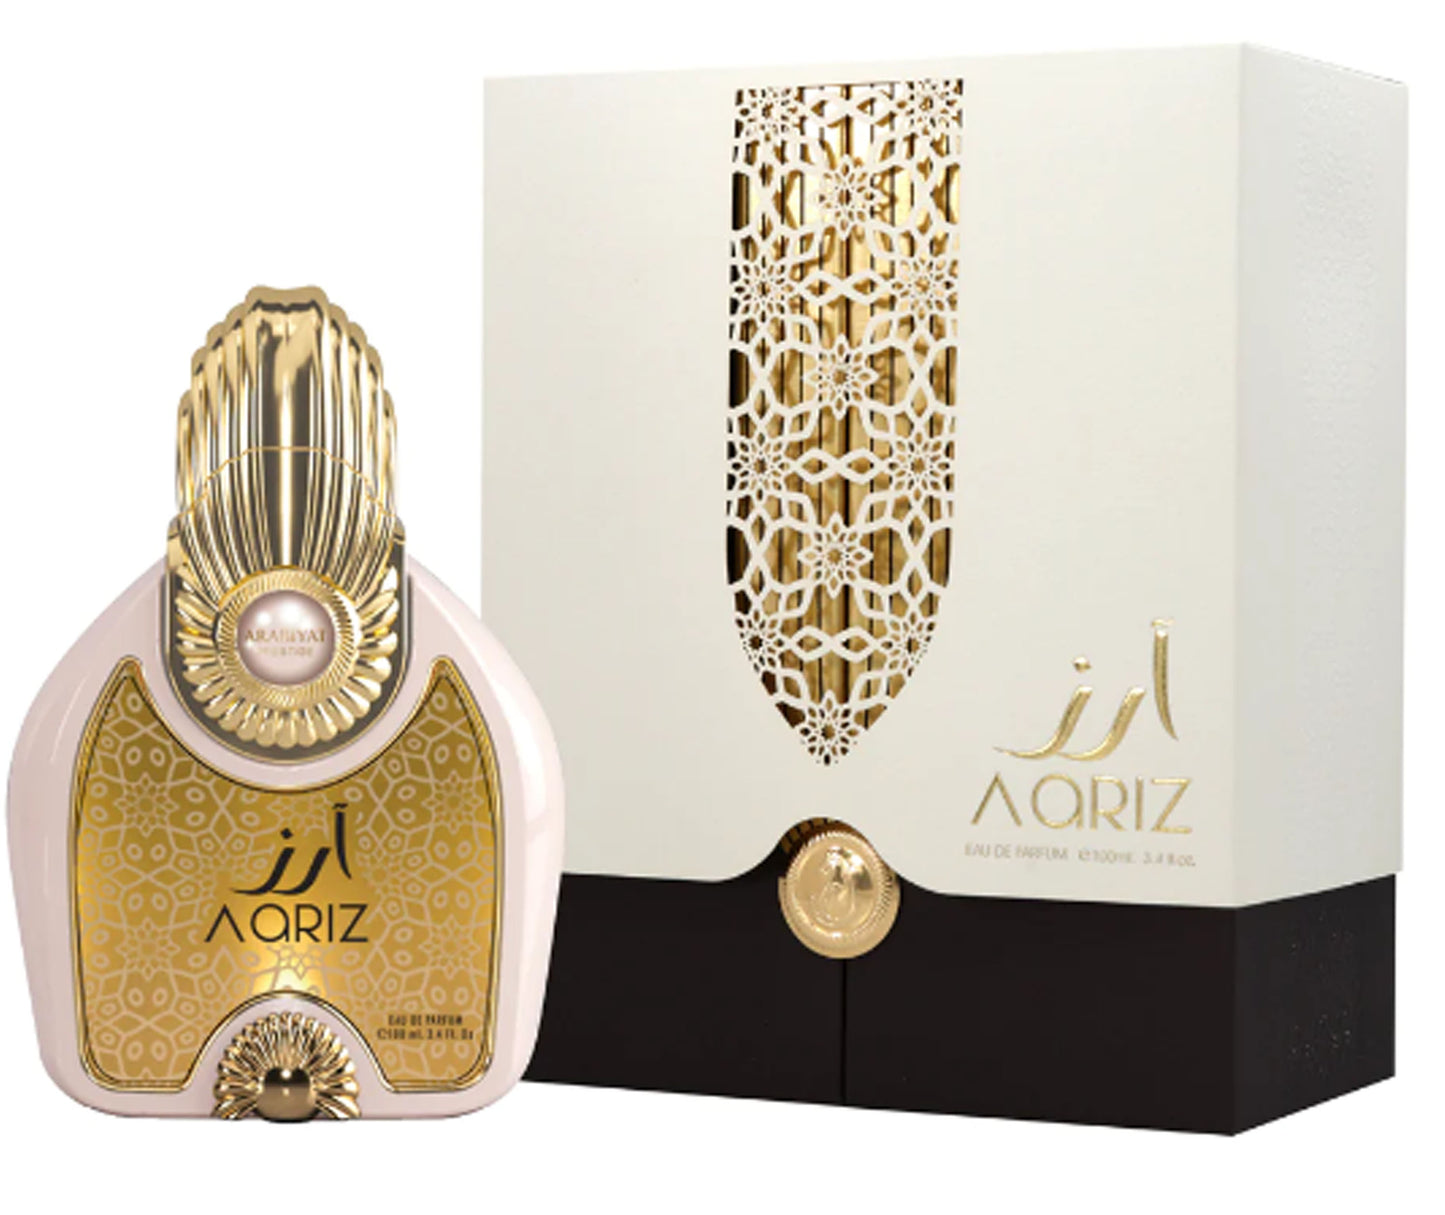 Aariz Perfume 100ml EDP by Arabiyat Prestige